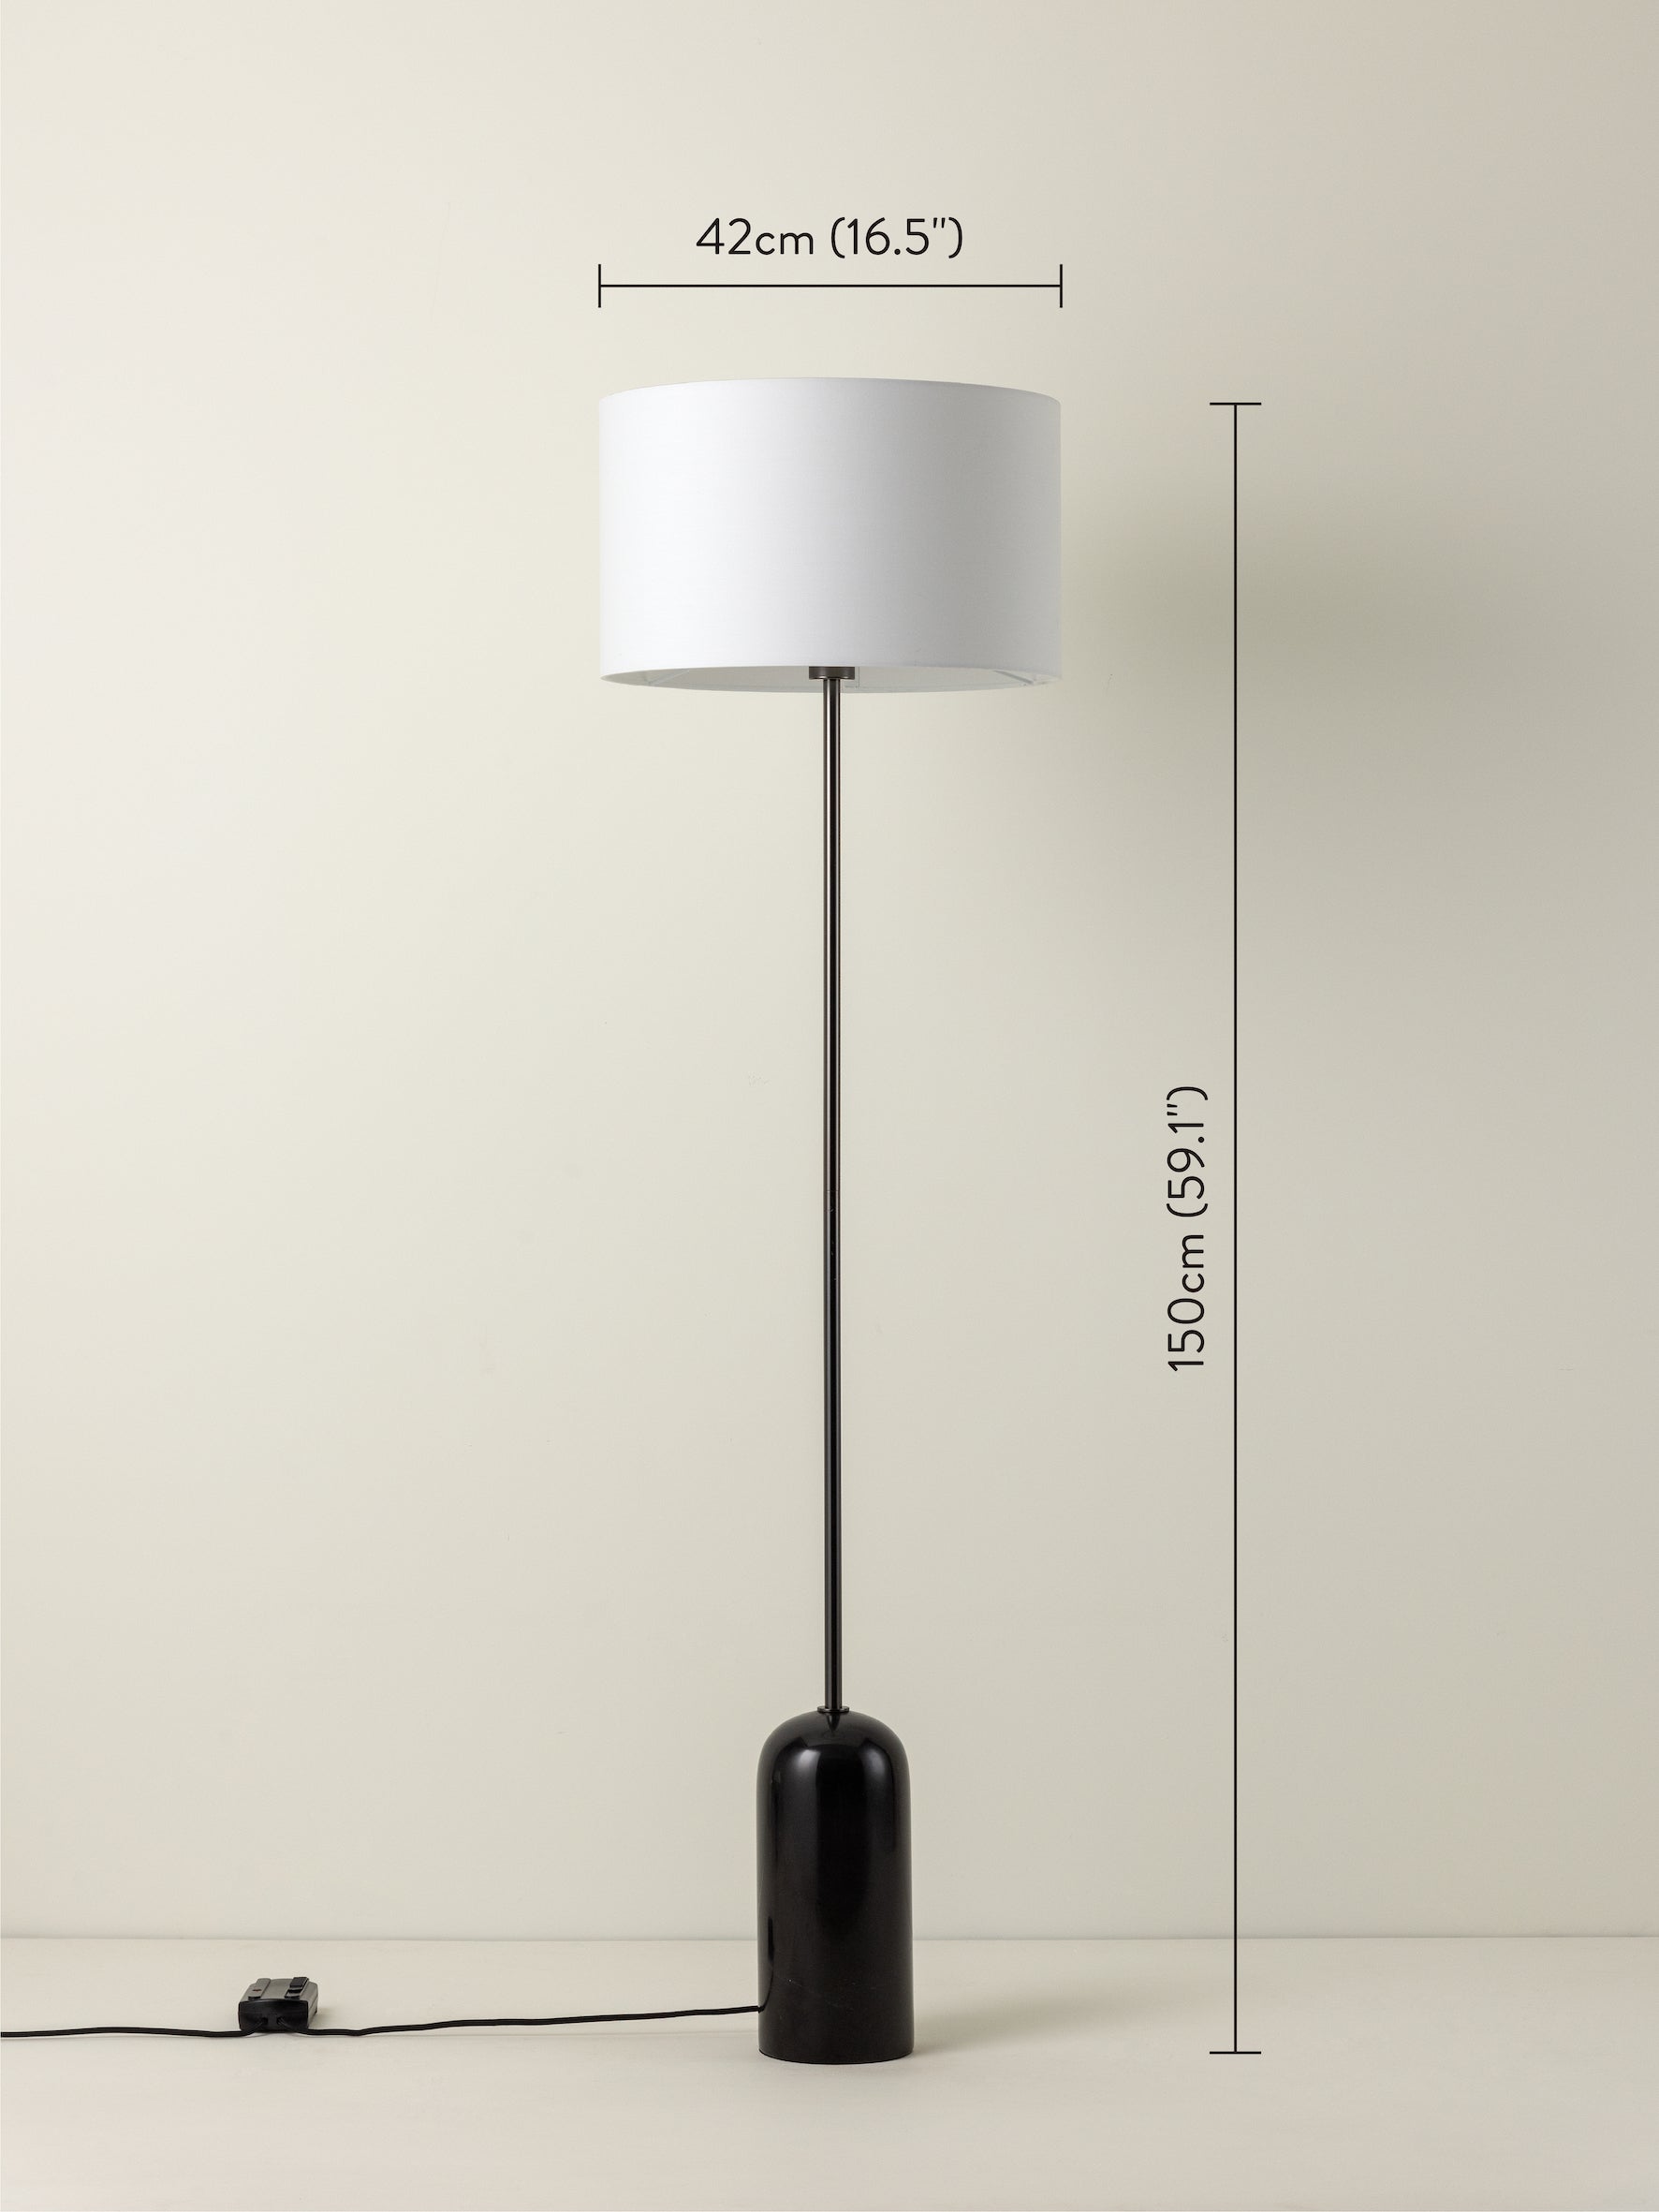 Penn - 1 light black marble and graphite silver floor lamp | Floor Lamp | Lights & Lamps | UK | Modern Affordable Designer Lighting